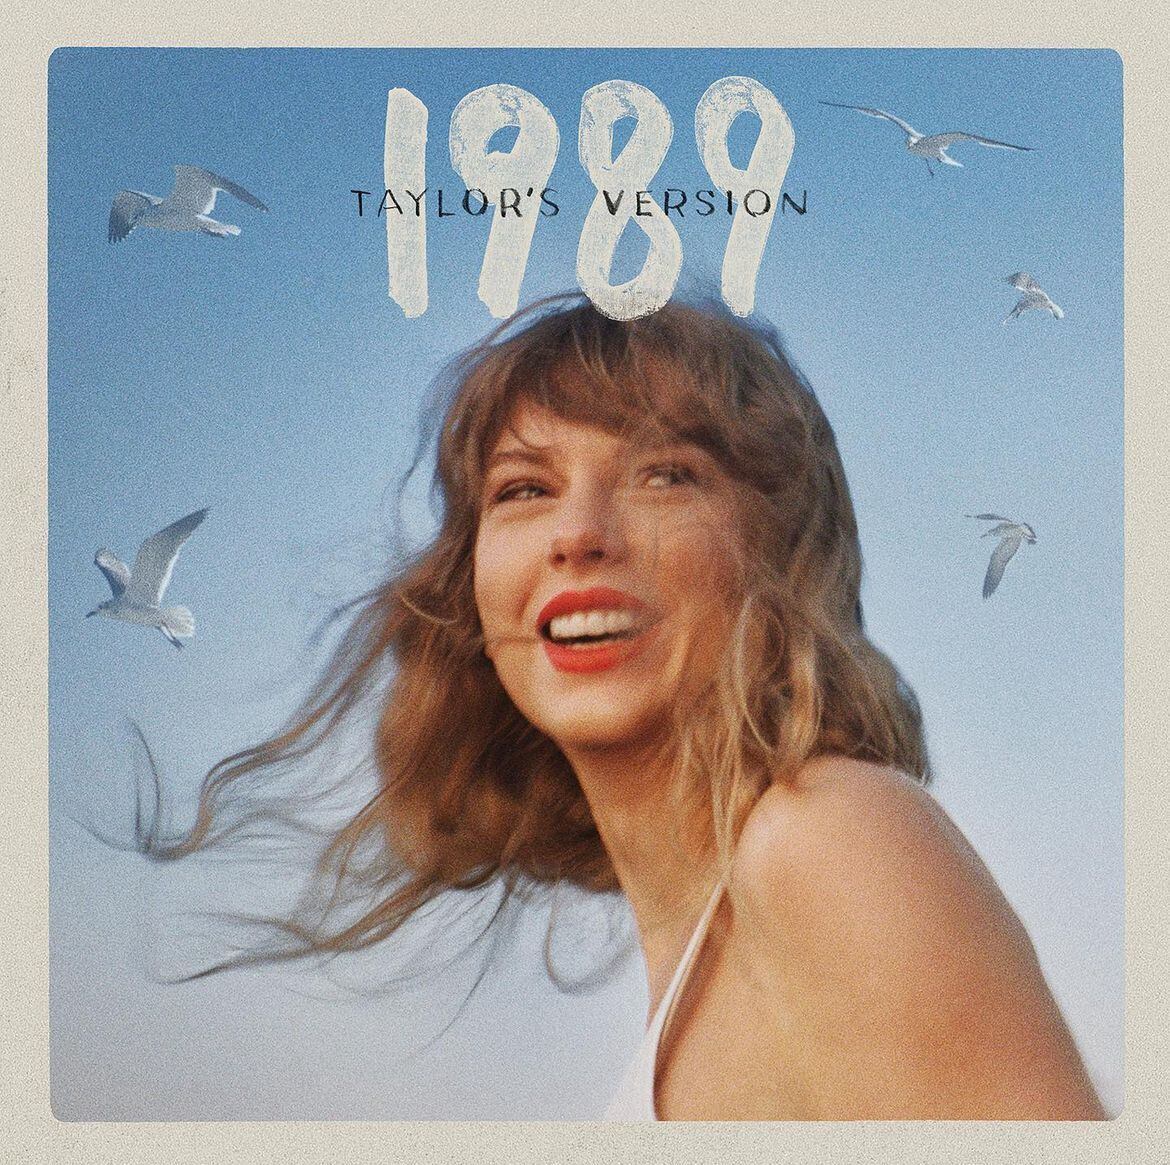 A diferencia del álbum del 2014, en la portada del disco '1989 (Taylor's Version)' se puede apreciar un retrato completo de Taylor Swift.